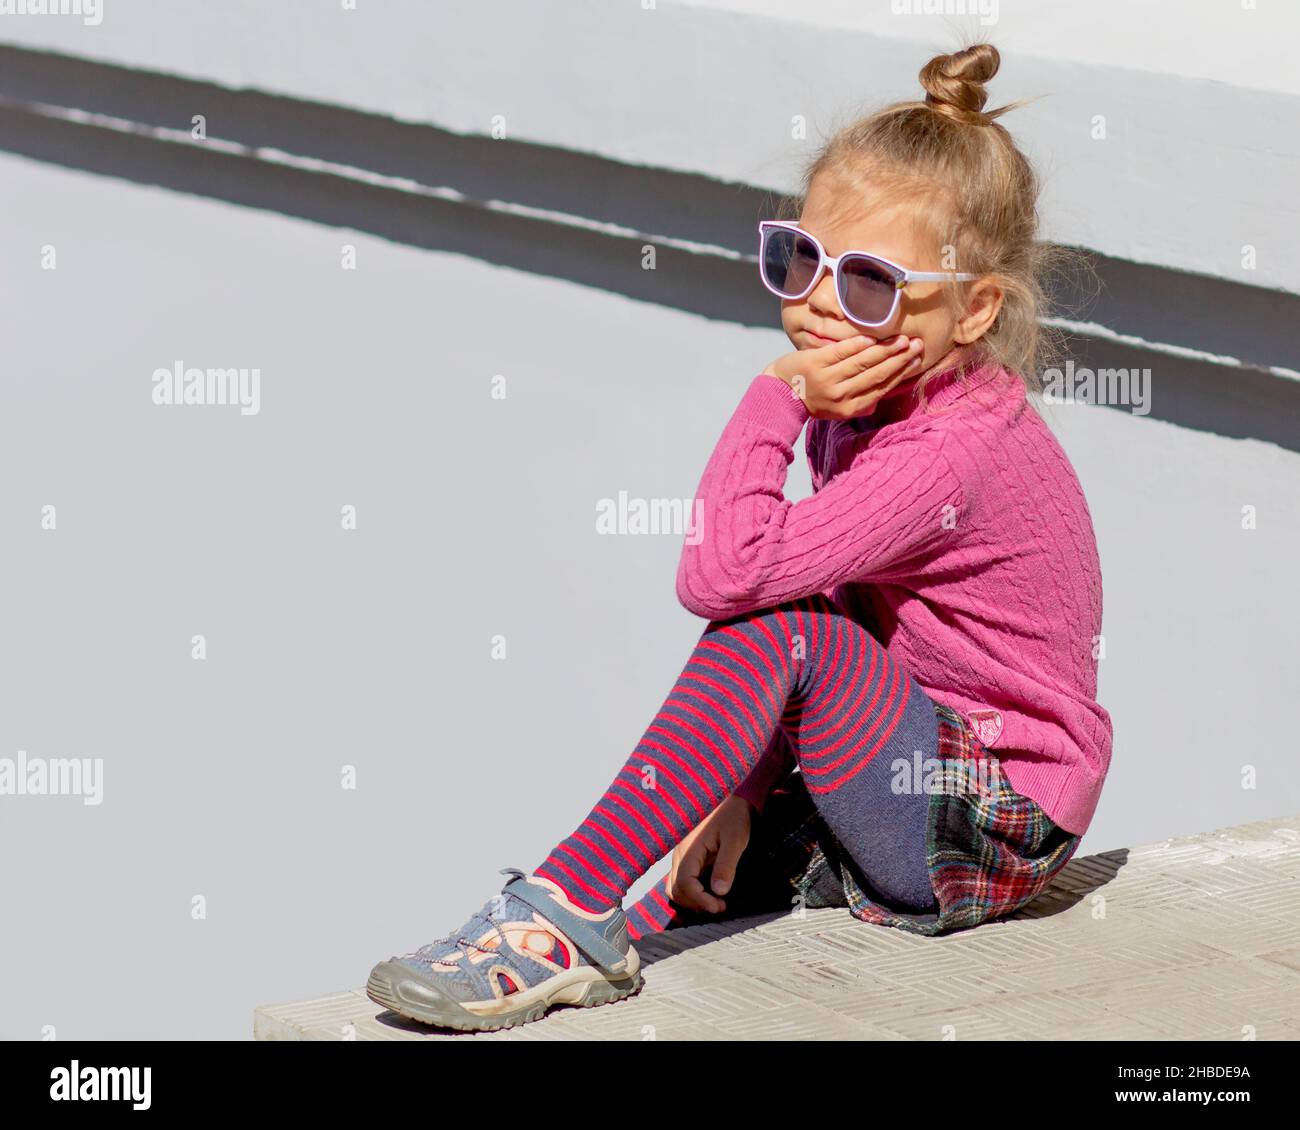 Lindo pensamiento de moda y soñando niña de 5 años sentado sosteniendo su barbilla y mirando a un lado en gafas de sol fuera en verano de stock Alamy